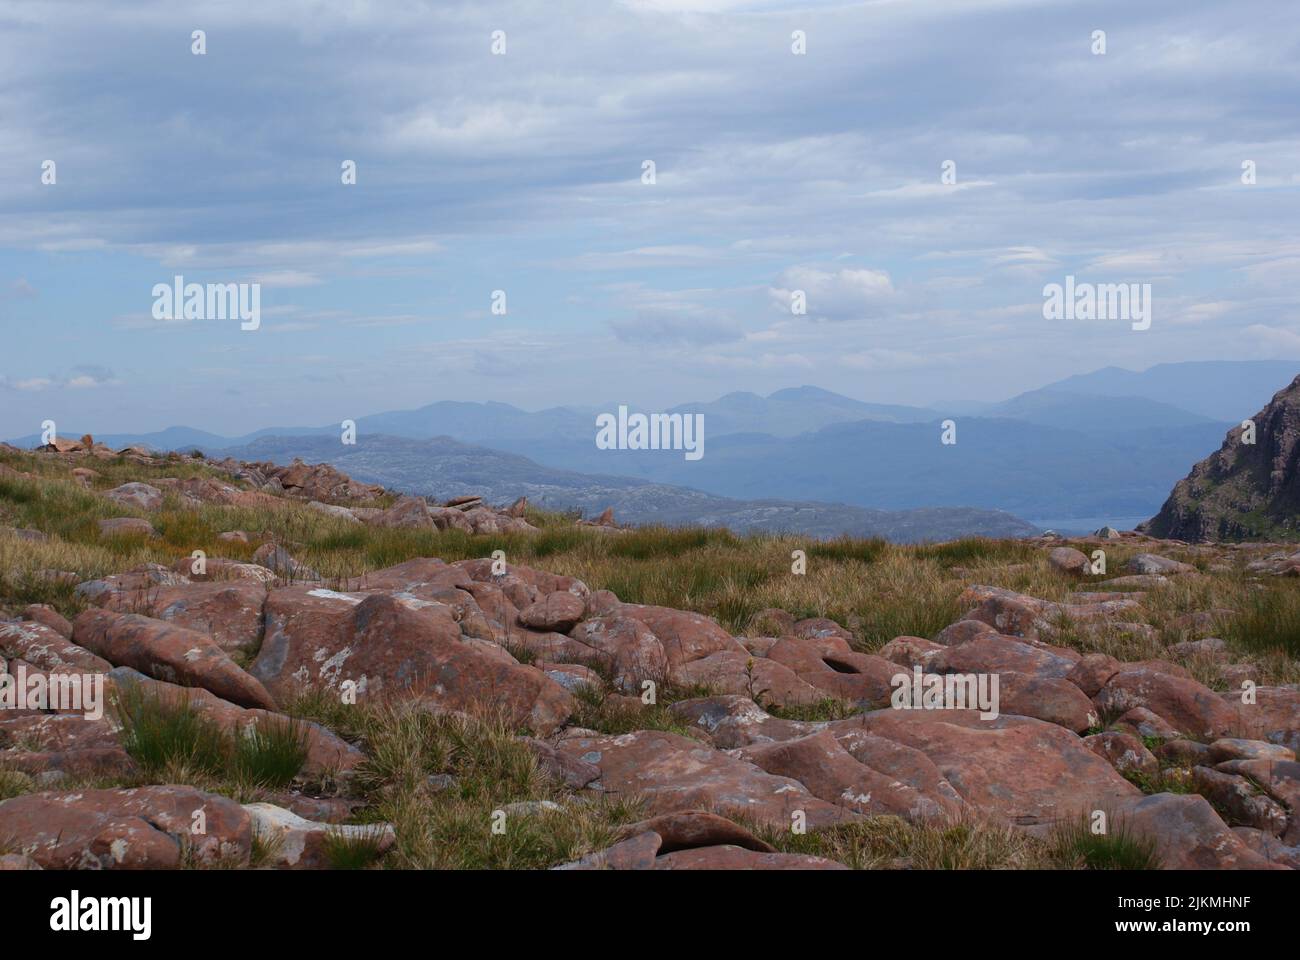 Eine schöne Aufnahme von einigen riesigen Felsen auf dem Boden, umgeben von Grassträuchern. Stockfoto